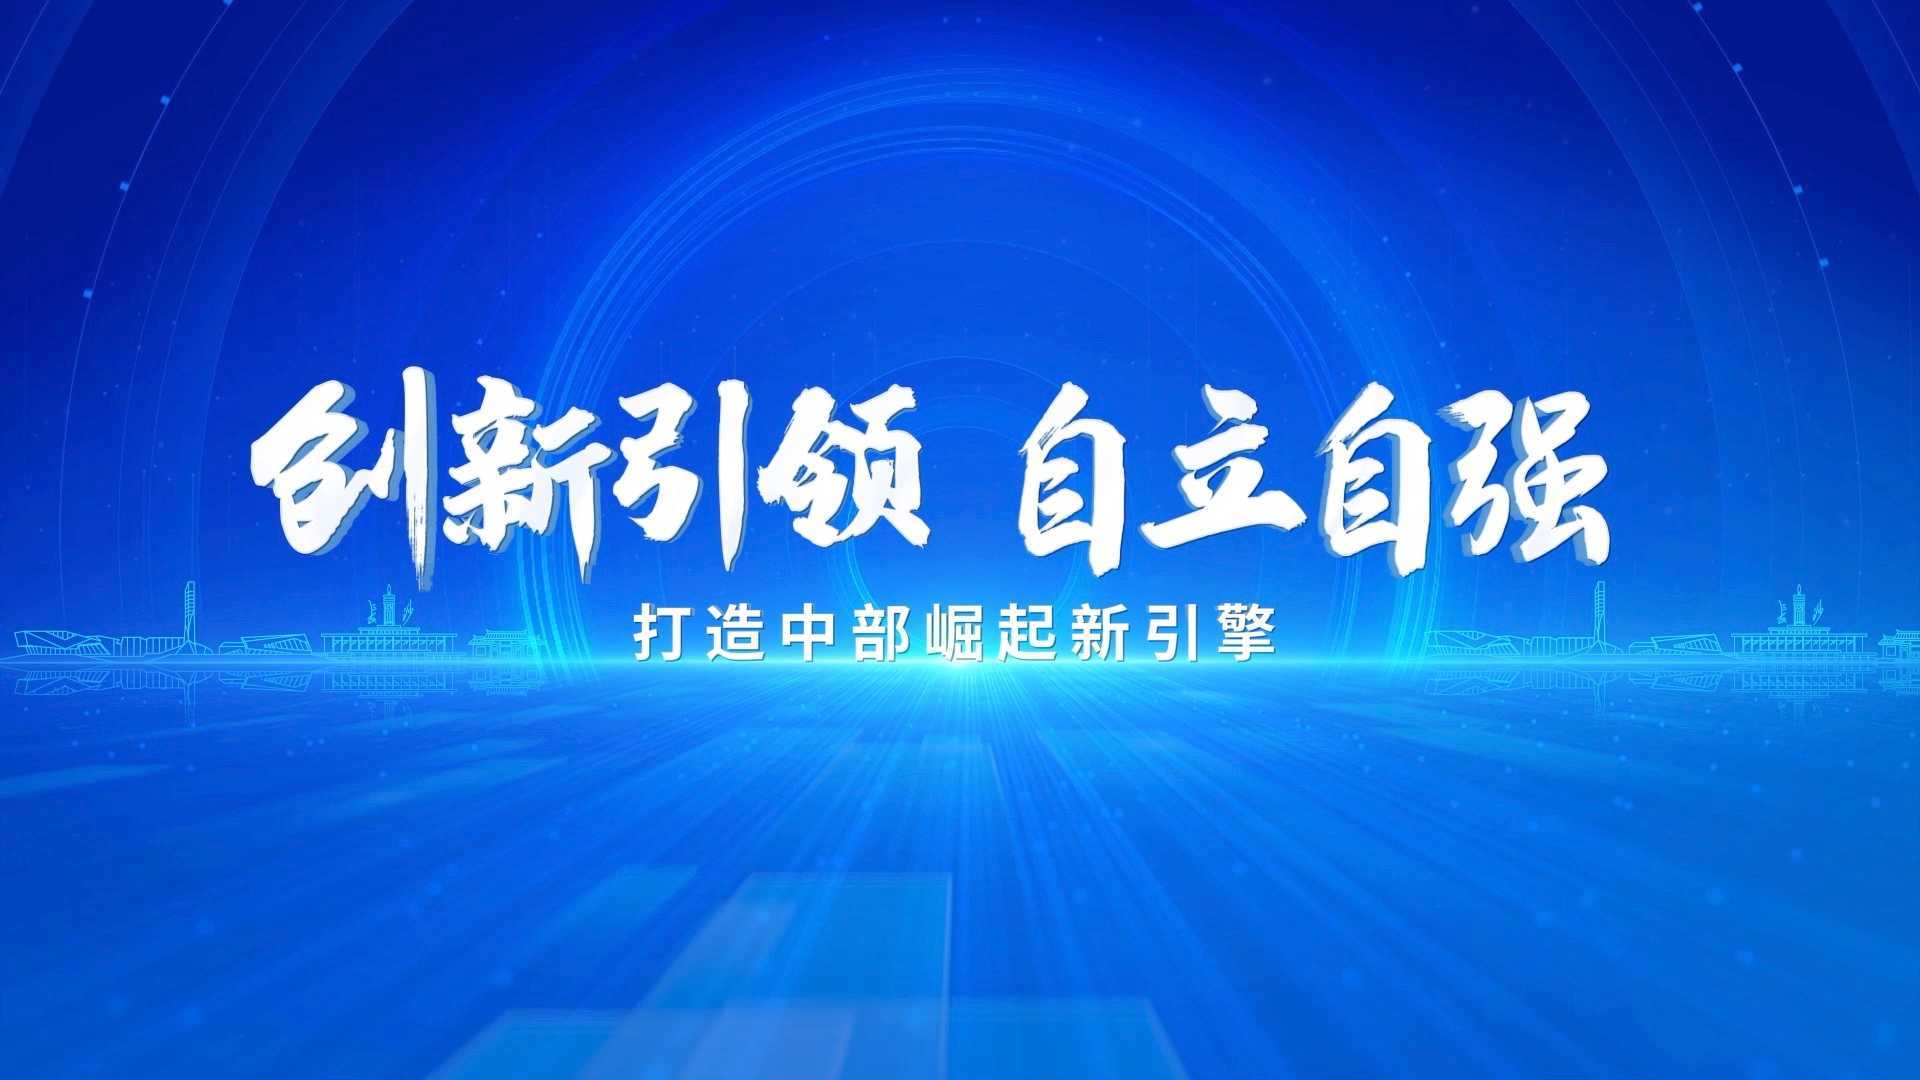 《创新引领 自立自强》第二十四届中国科协年会开场片